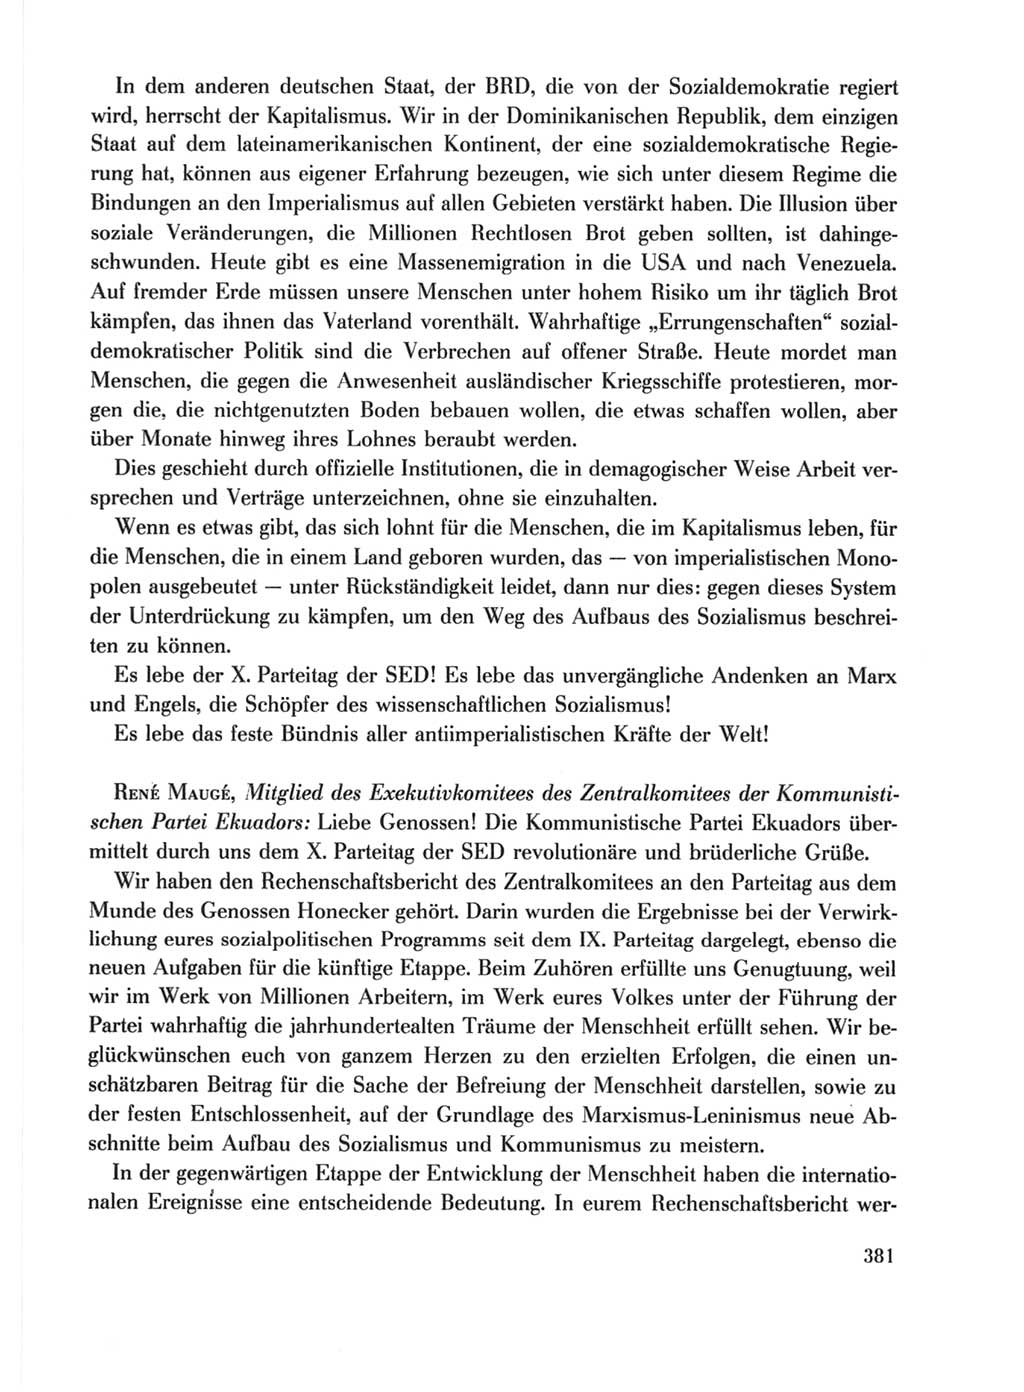 Protokoll der Verhandlungen des Ⅹ. Parteitages der Sozialistischen Einheitspartei Deutschlands (SED) [Deutsche Demokratische Republik (DDR)] 1981, Band 1, Seite 381 (Prot. Verh. Ⅹ. PT SED DDR 1981, Bd. 1, S. 381)